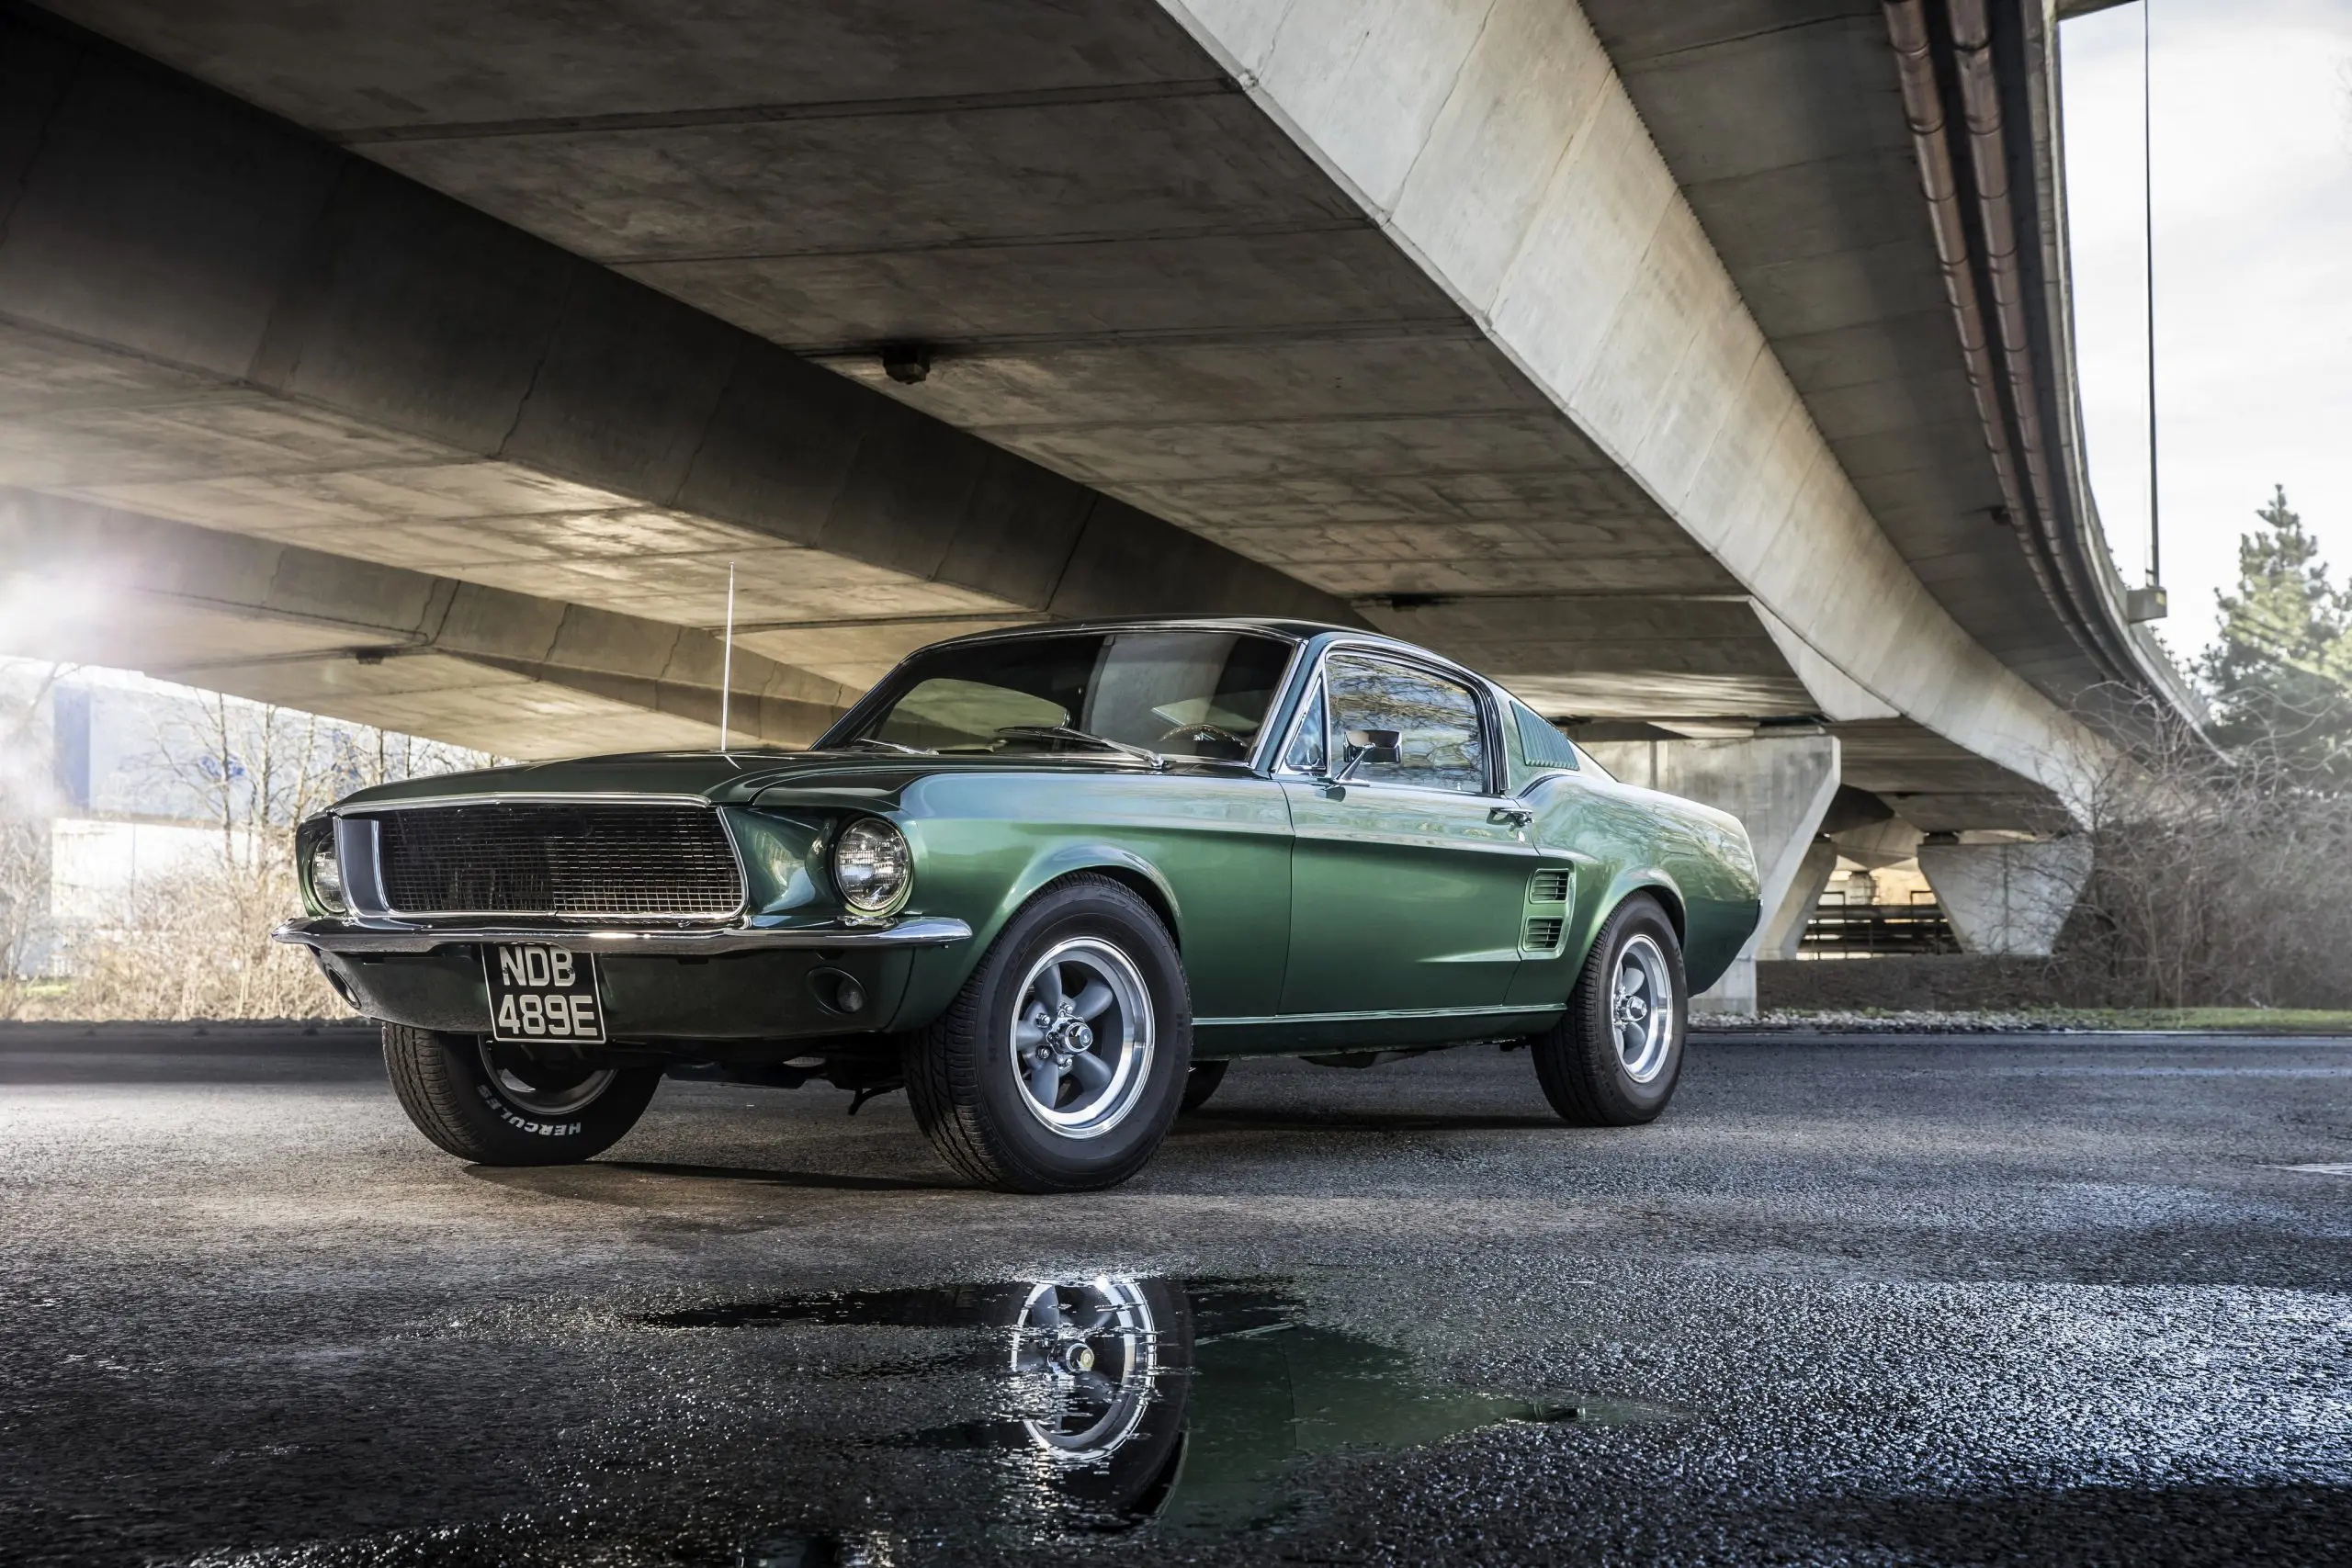 1968 Mustang - Ultimate Guide